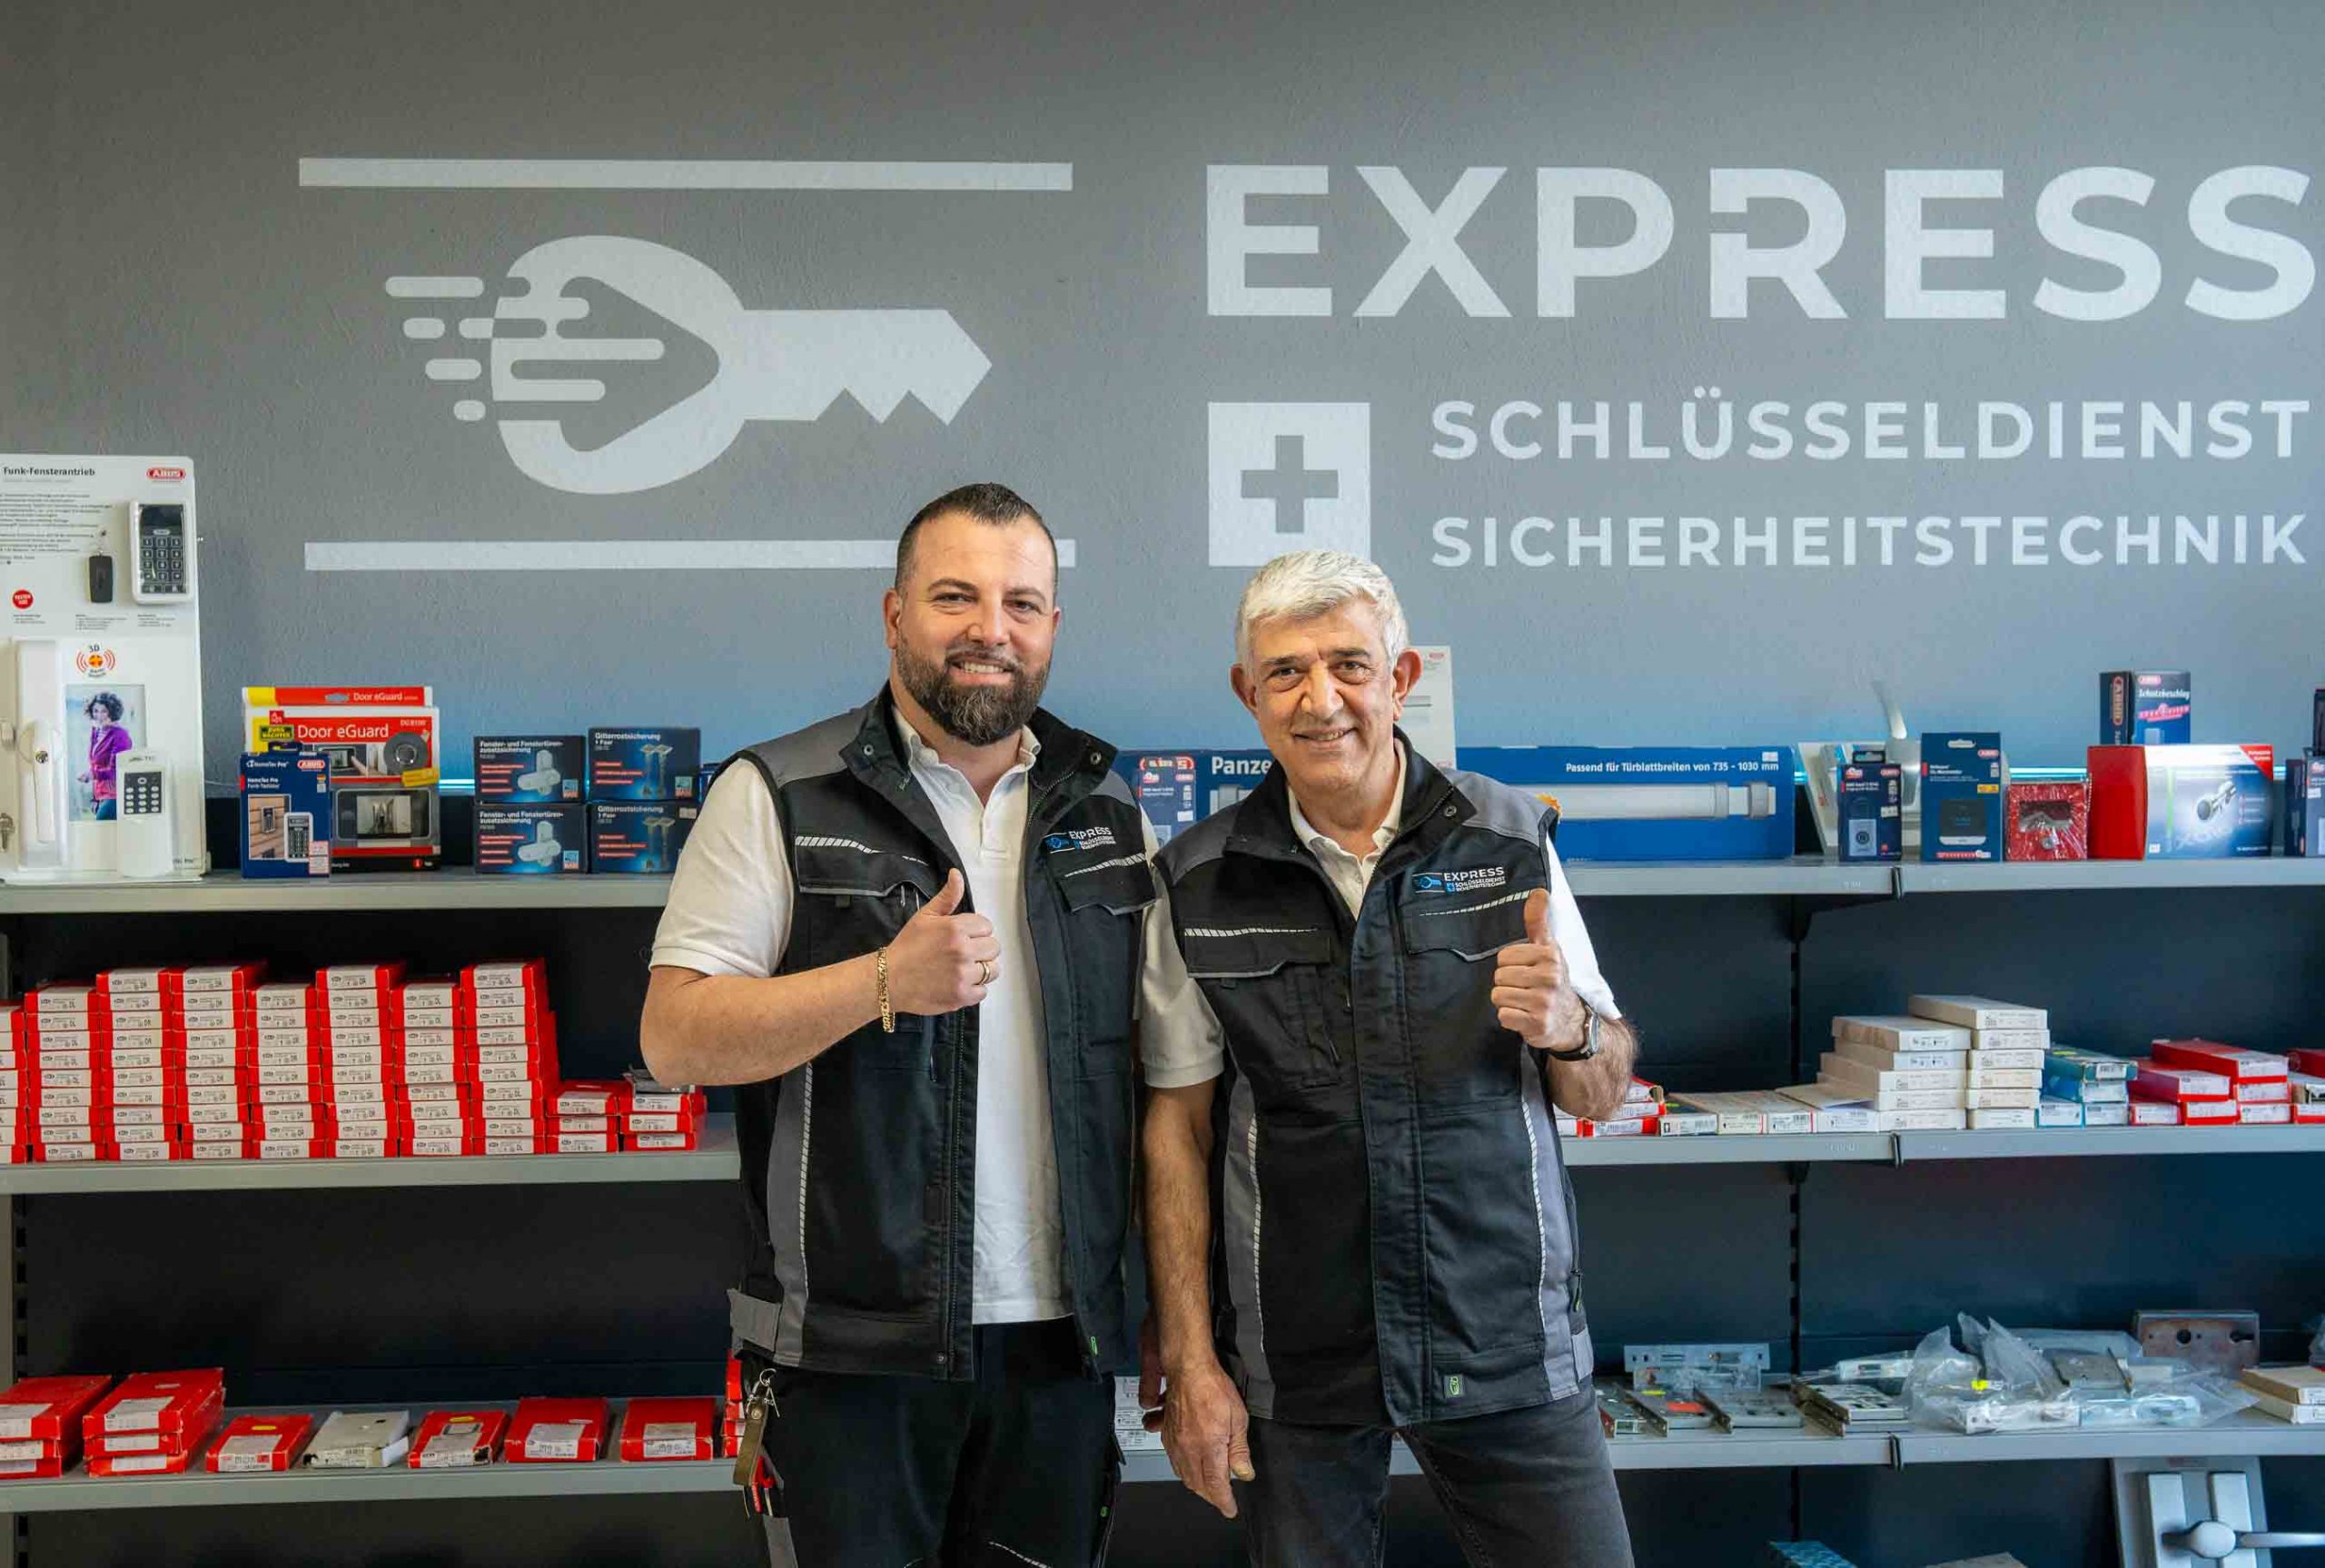 Express Schlüsseldienst Sicherheitstechnik Heilbronn